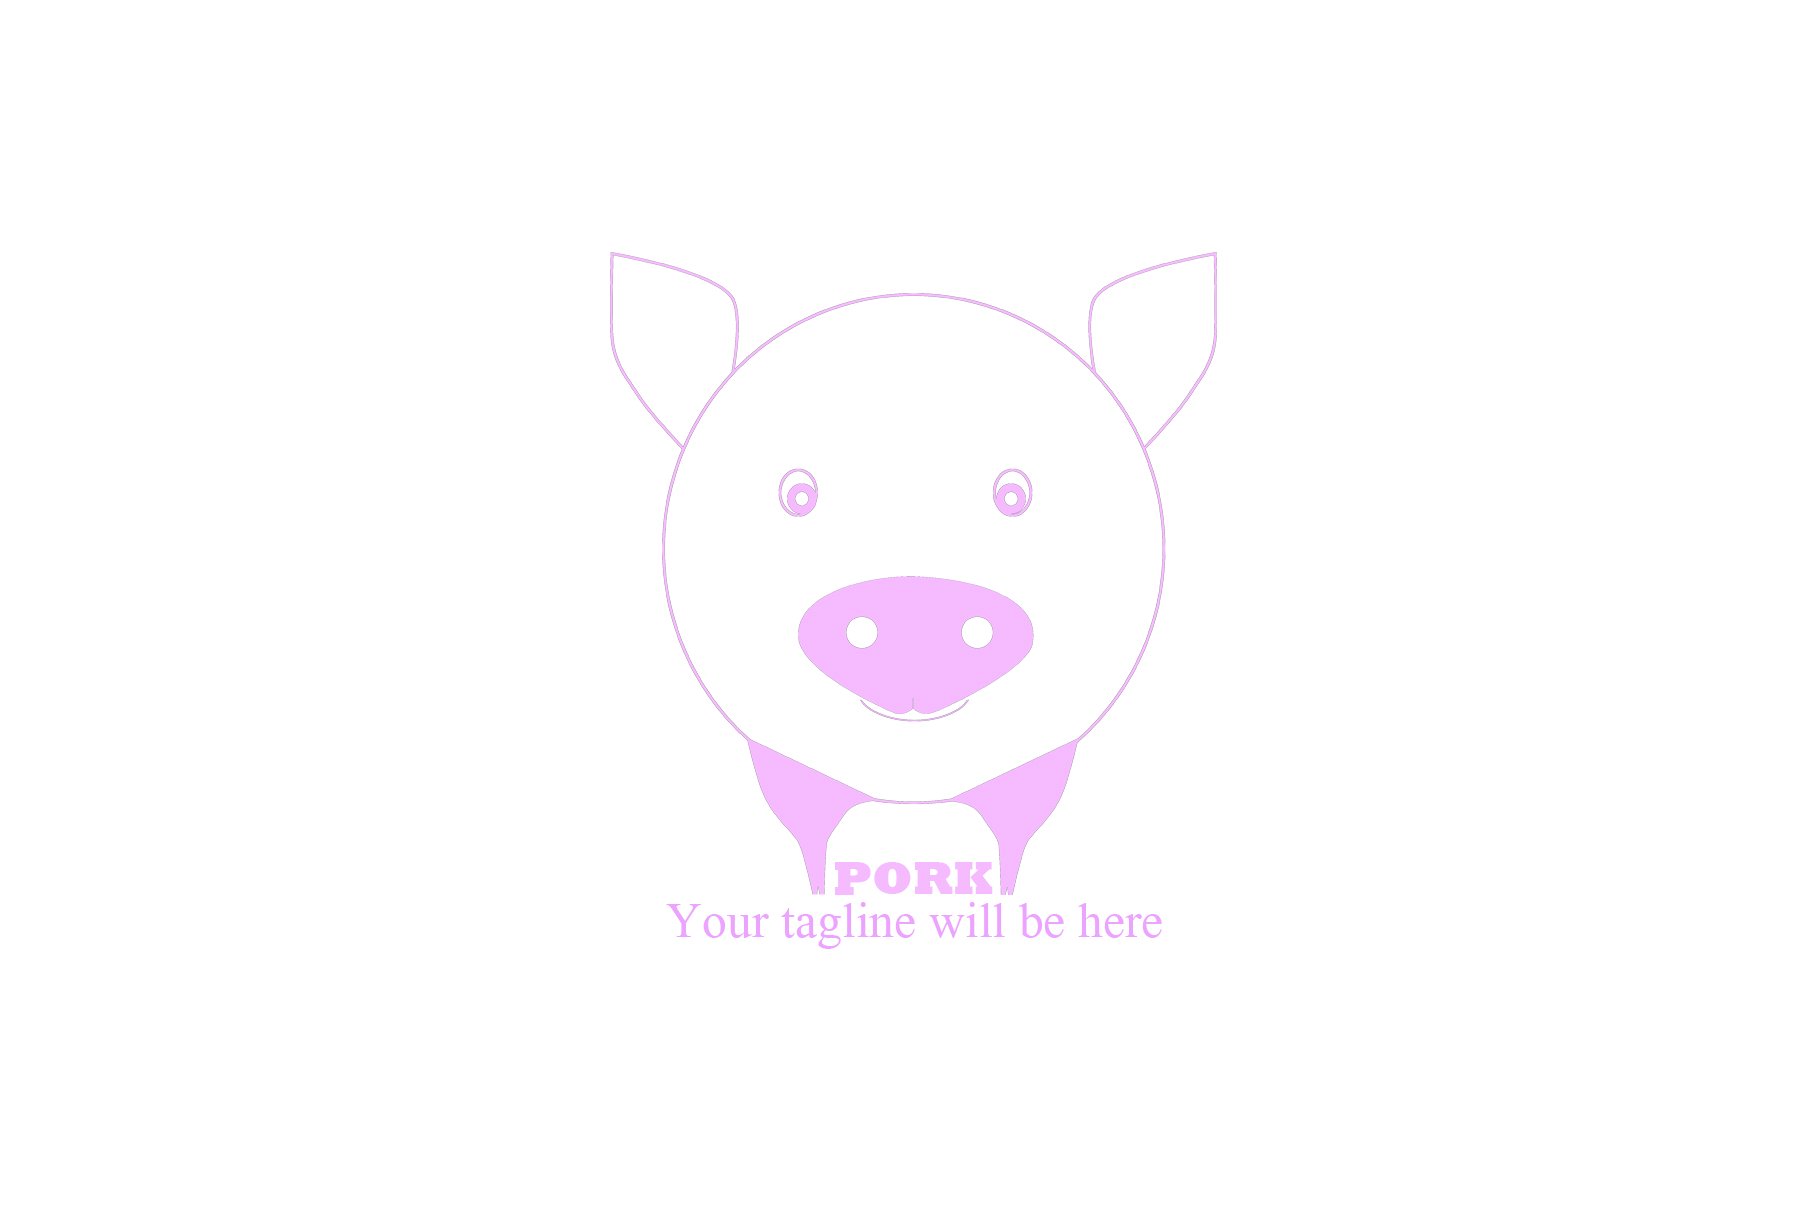 Pork Logo preview image.